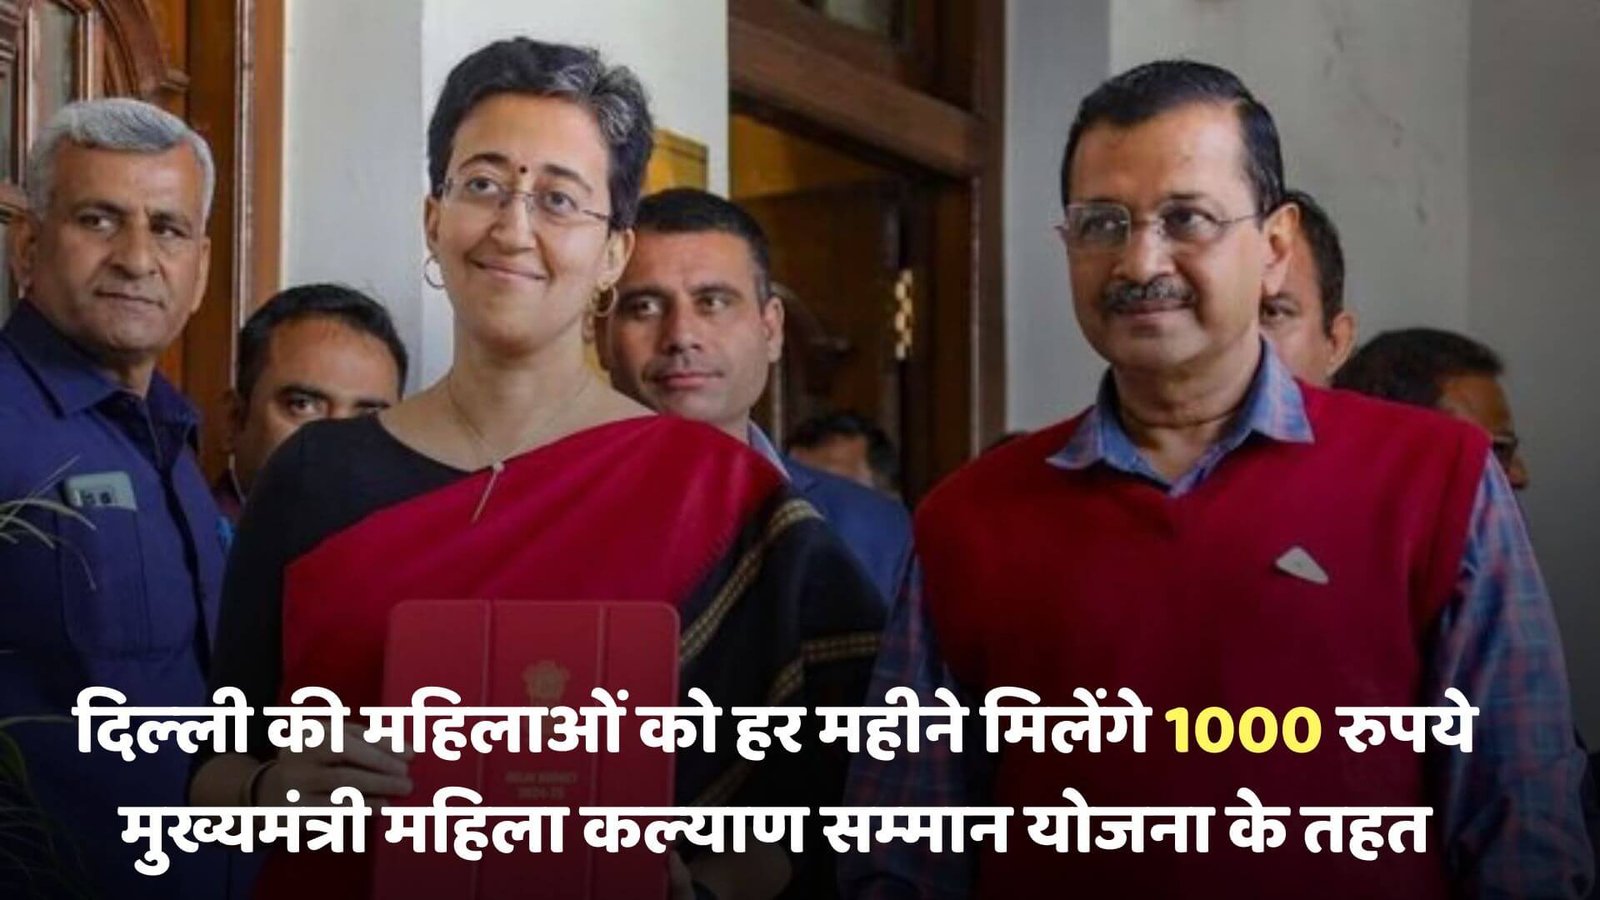 दिल्‍ली की महिलाओं को हर महीने मिलेंगे 1000 रुपये, चलिए जानते है क्‍या है मुख्यमंत्री महिला सम्‍मान योजना?